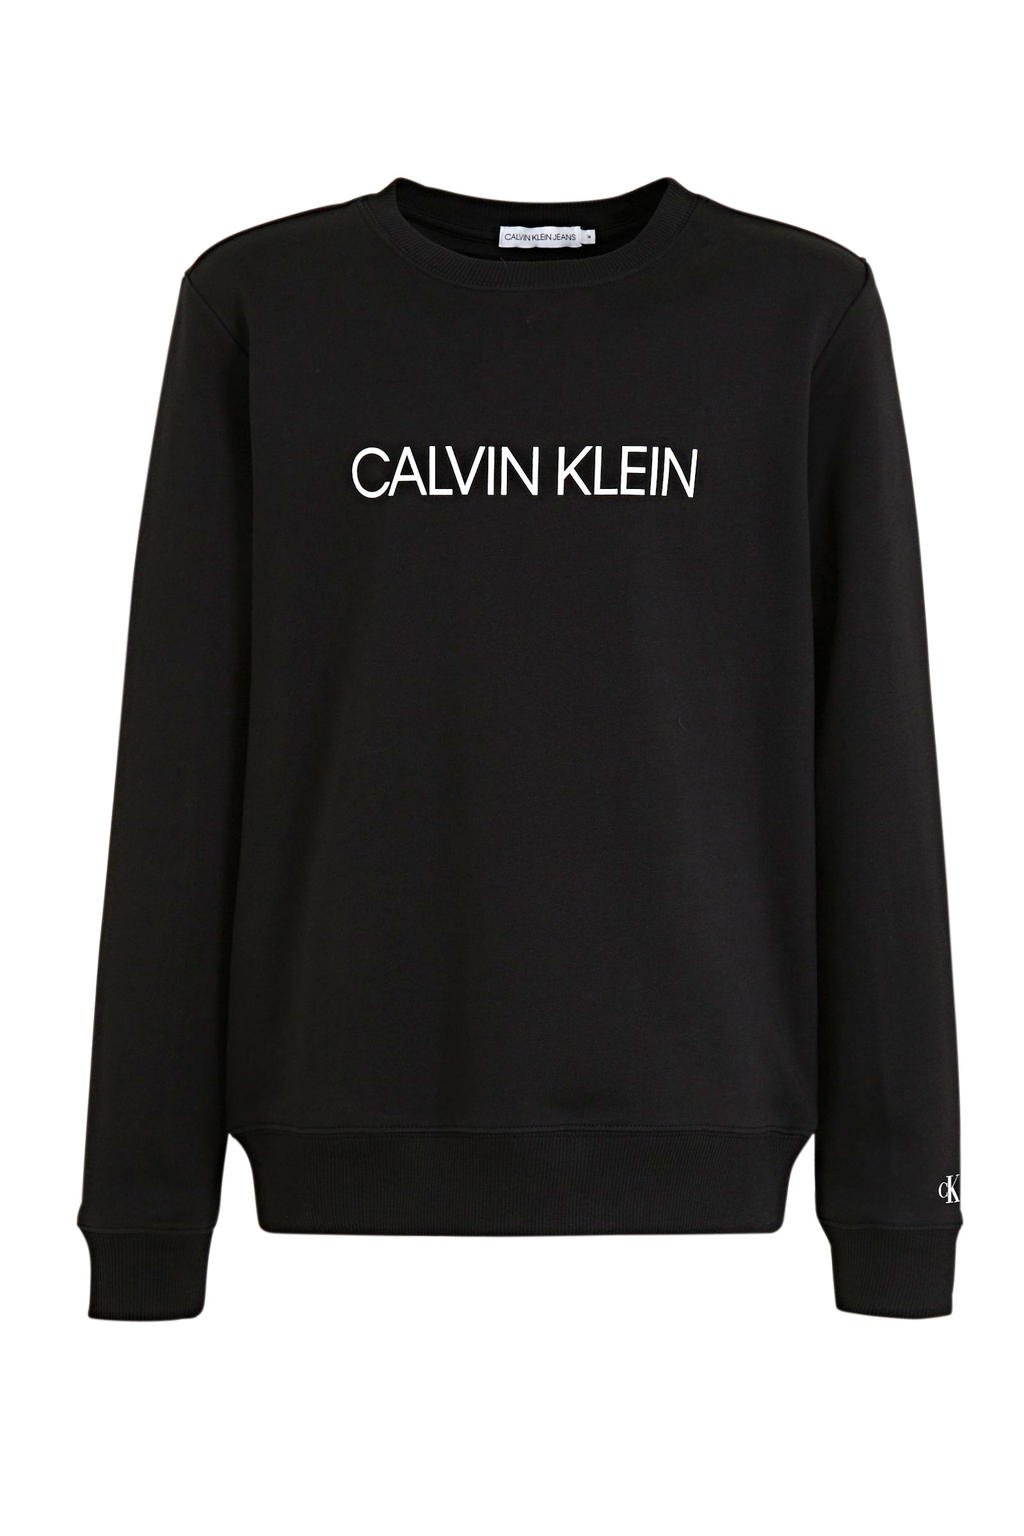 CALVIN KLEIN JEANS sweater van biologisch katoen zwart